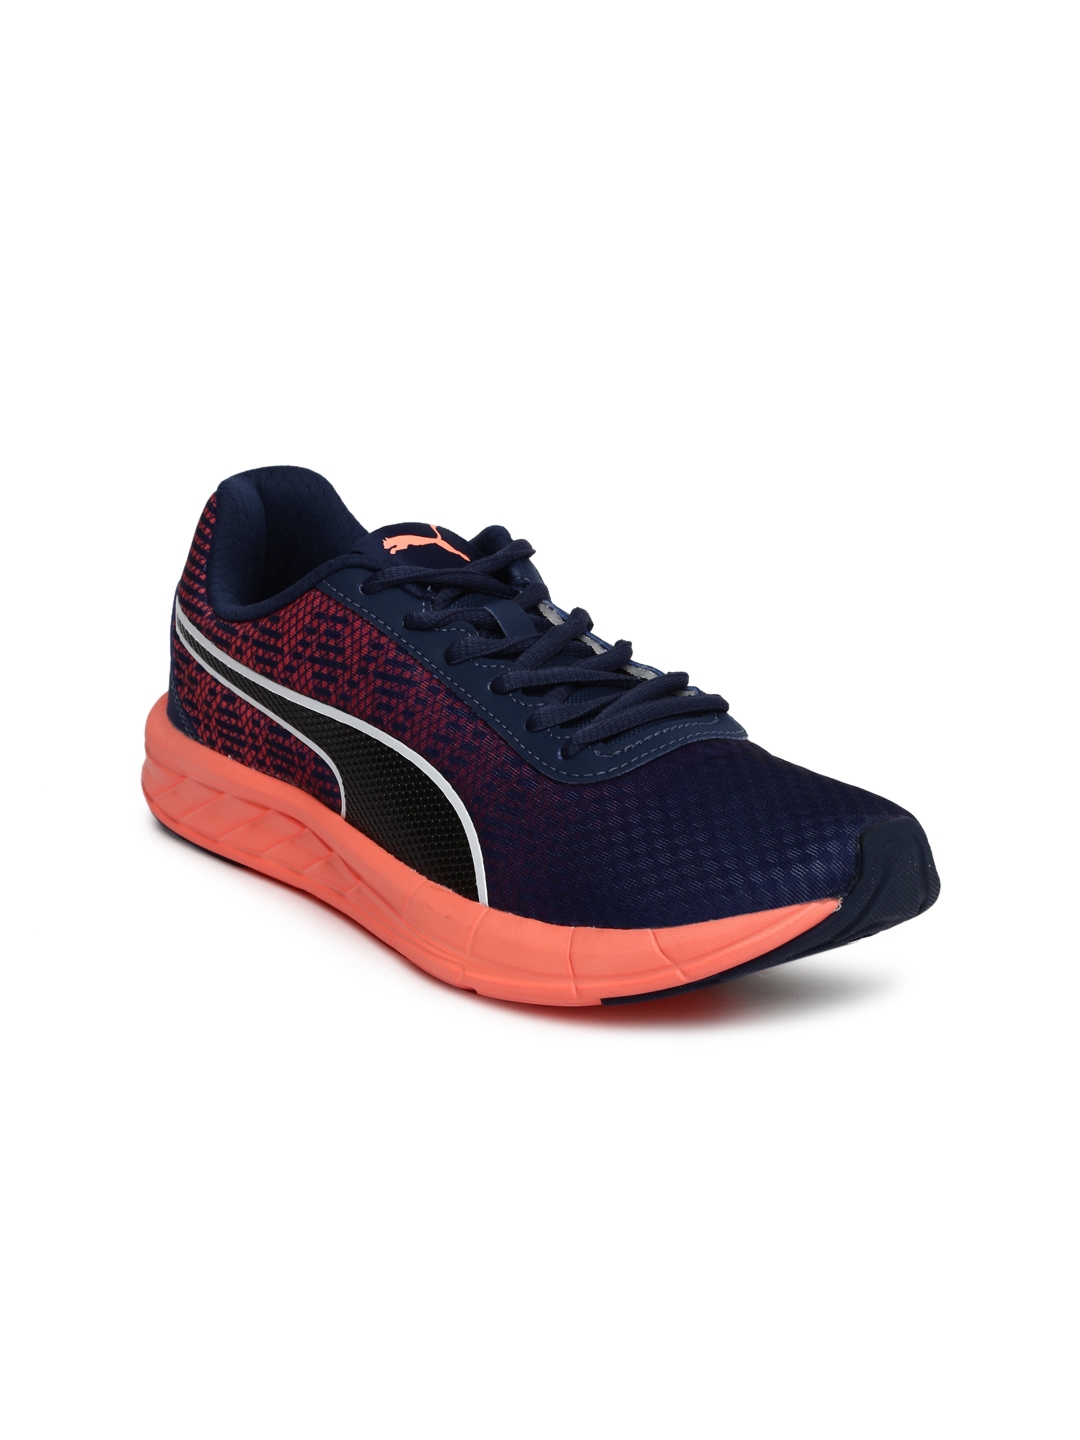 Buy Puma Women Blue Running Shoes - Sports Shoes for Women 2254361 | Myntra